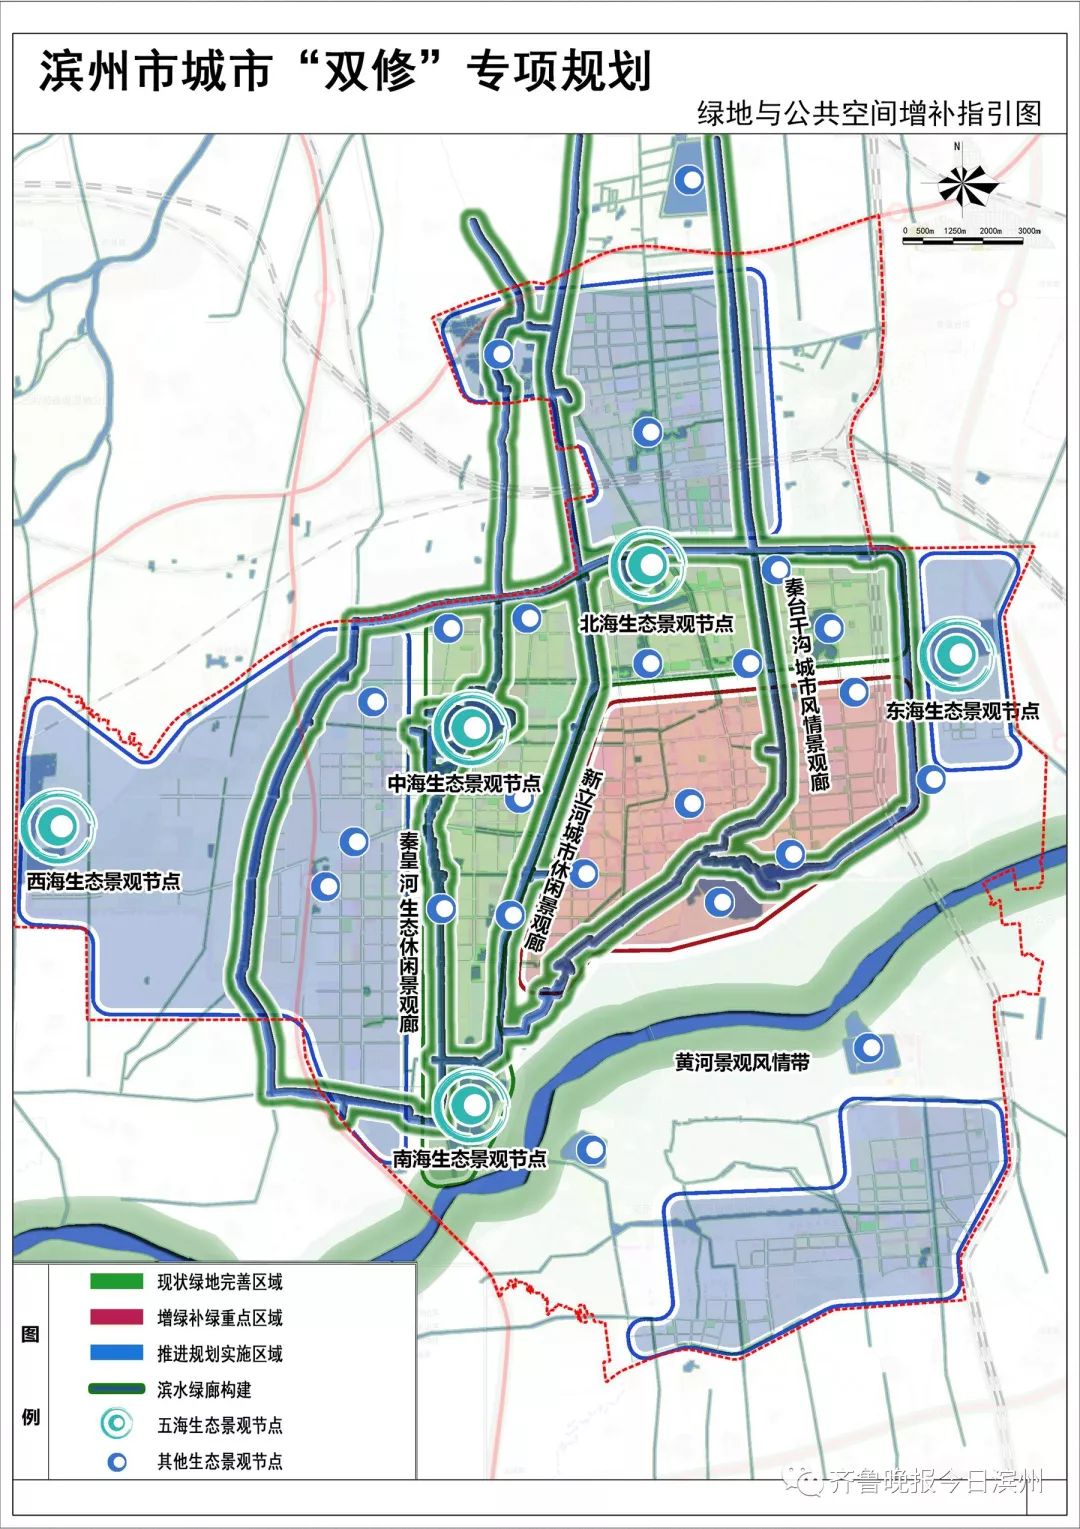 滨州高新区规划分布图图片